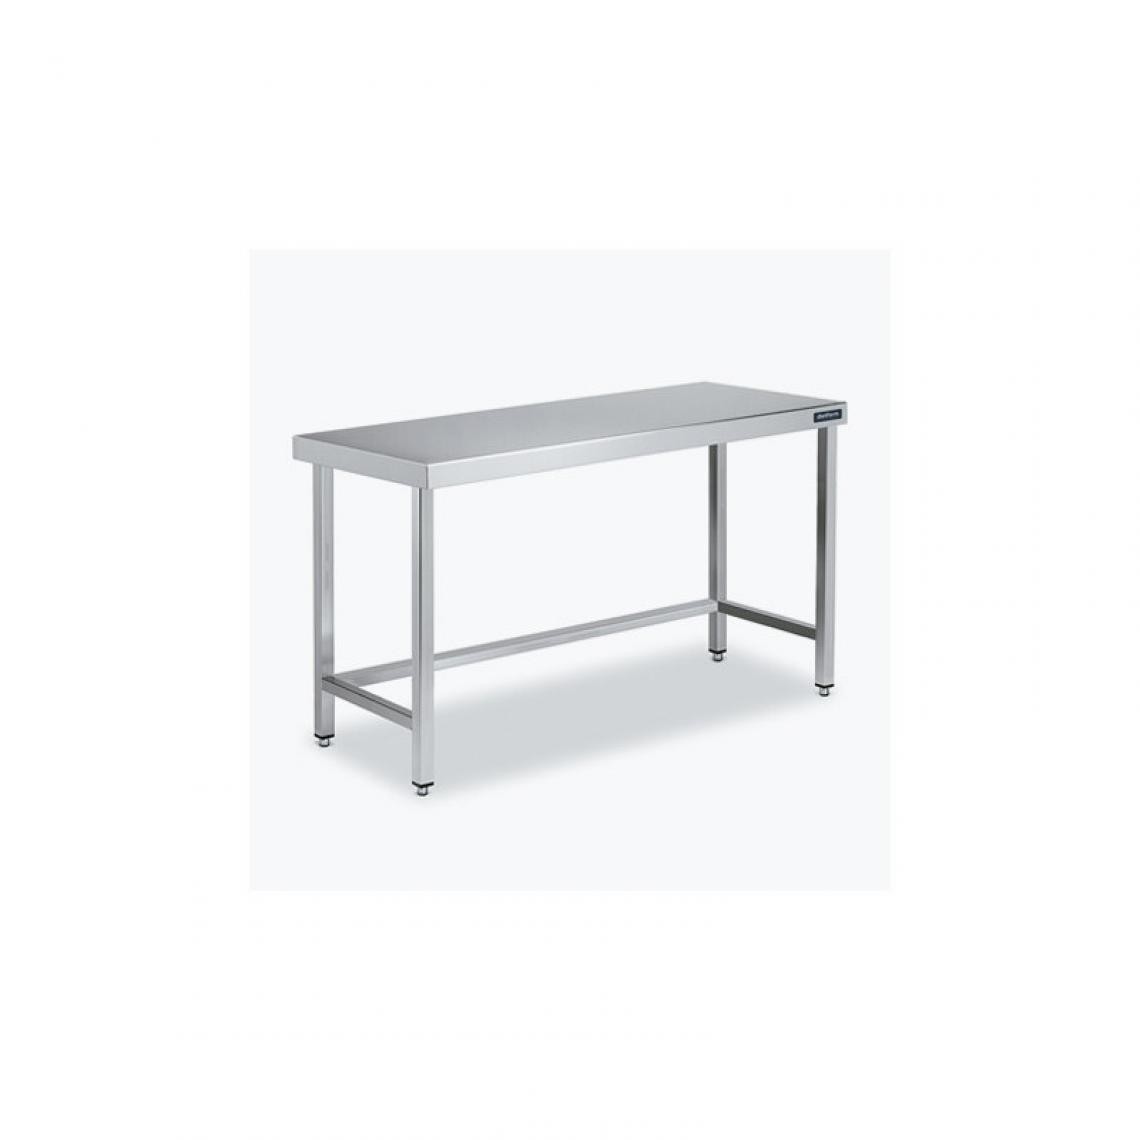 DISTFORM - Table Centrale 600x700X600 avec Renforts - Distform - Inox 18/101400x700x600mm - Tables à manger